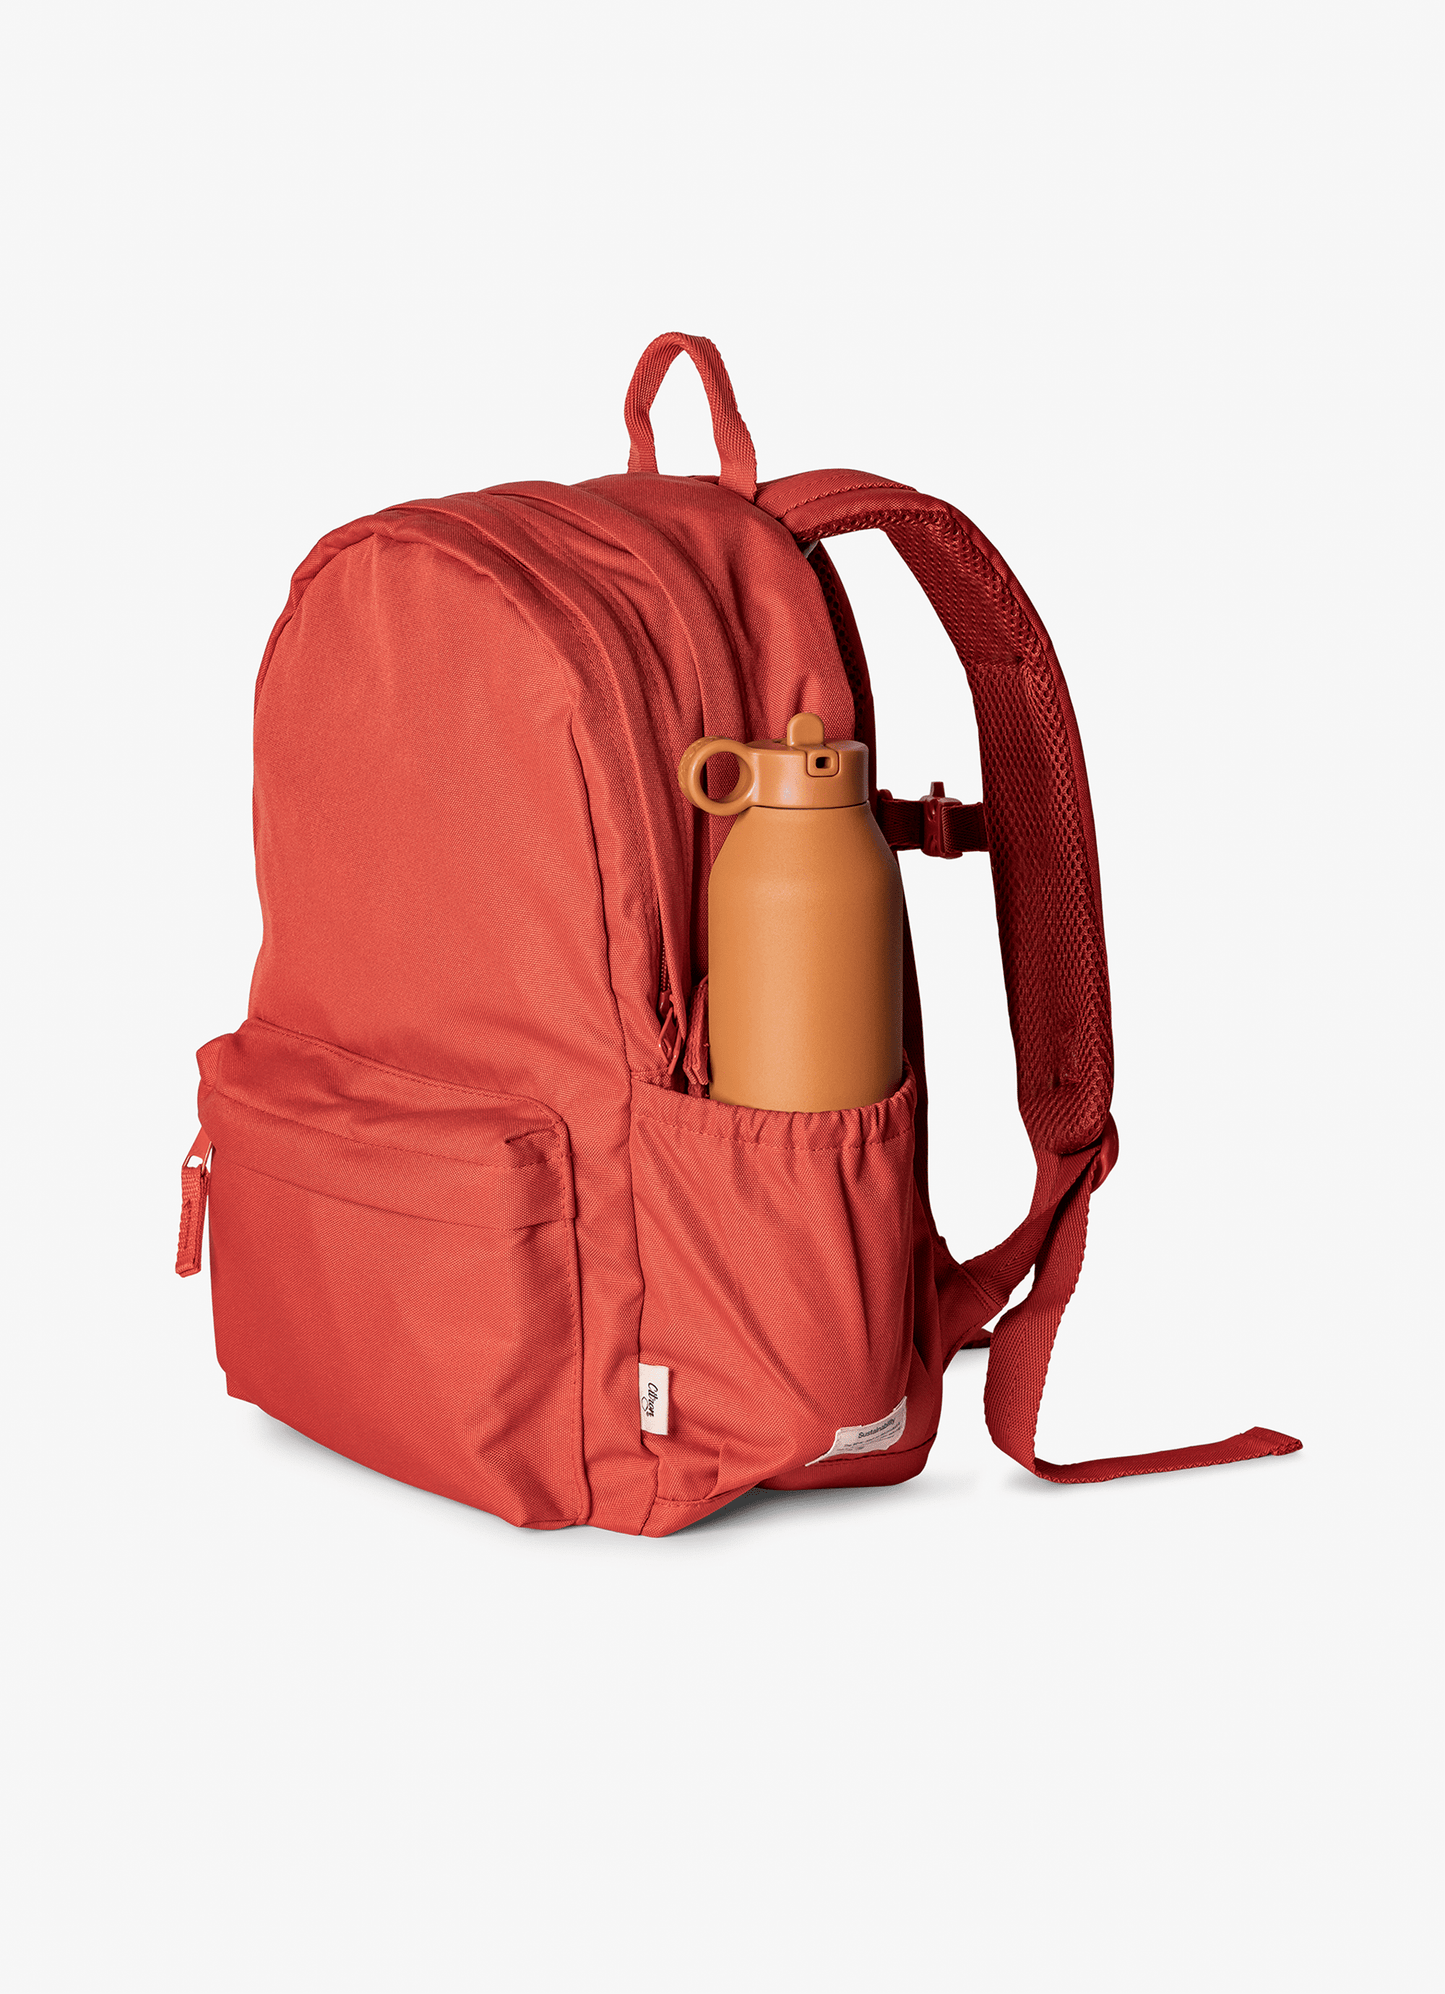 Grand Backpack - Brick